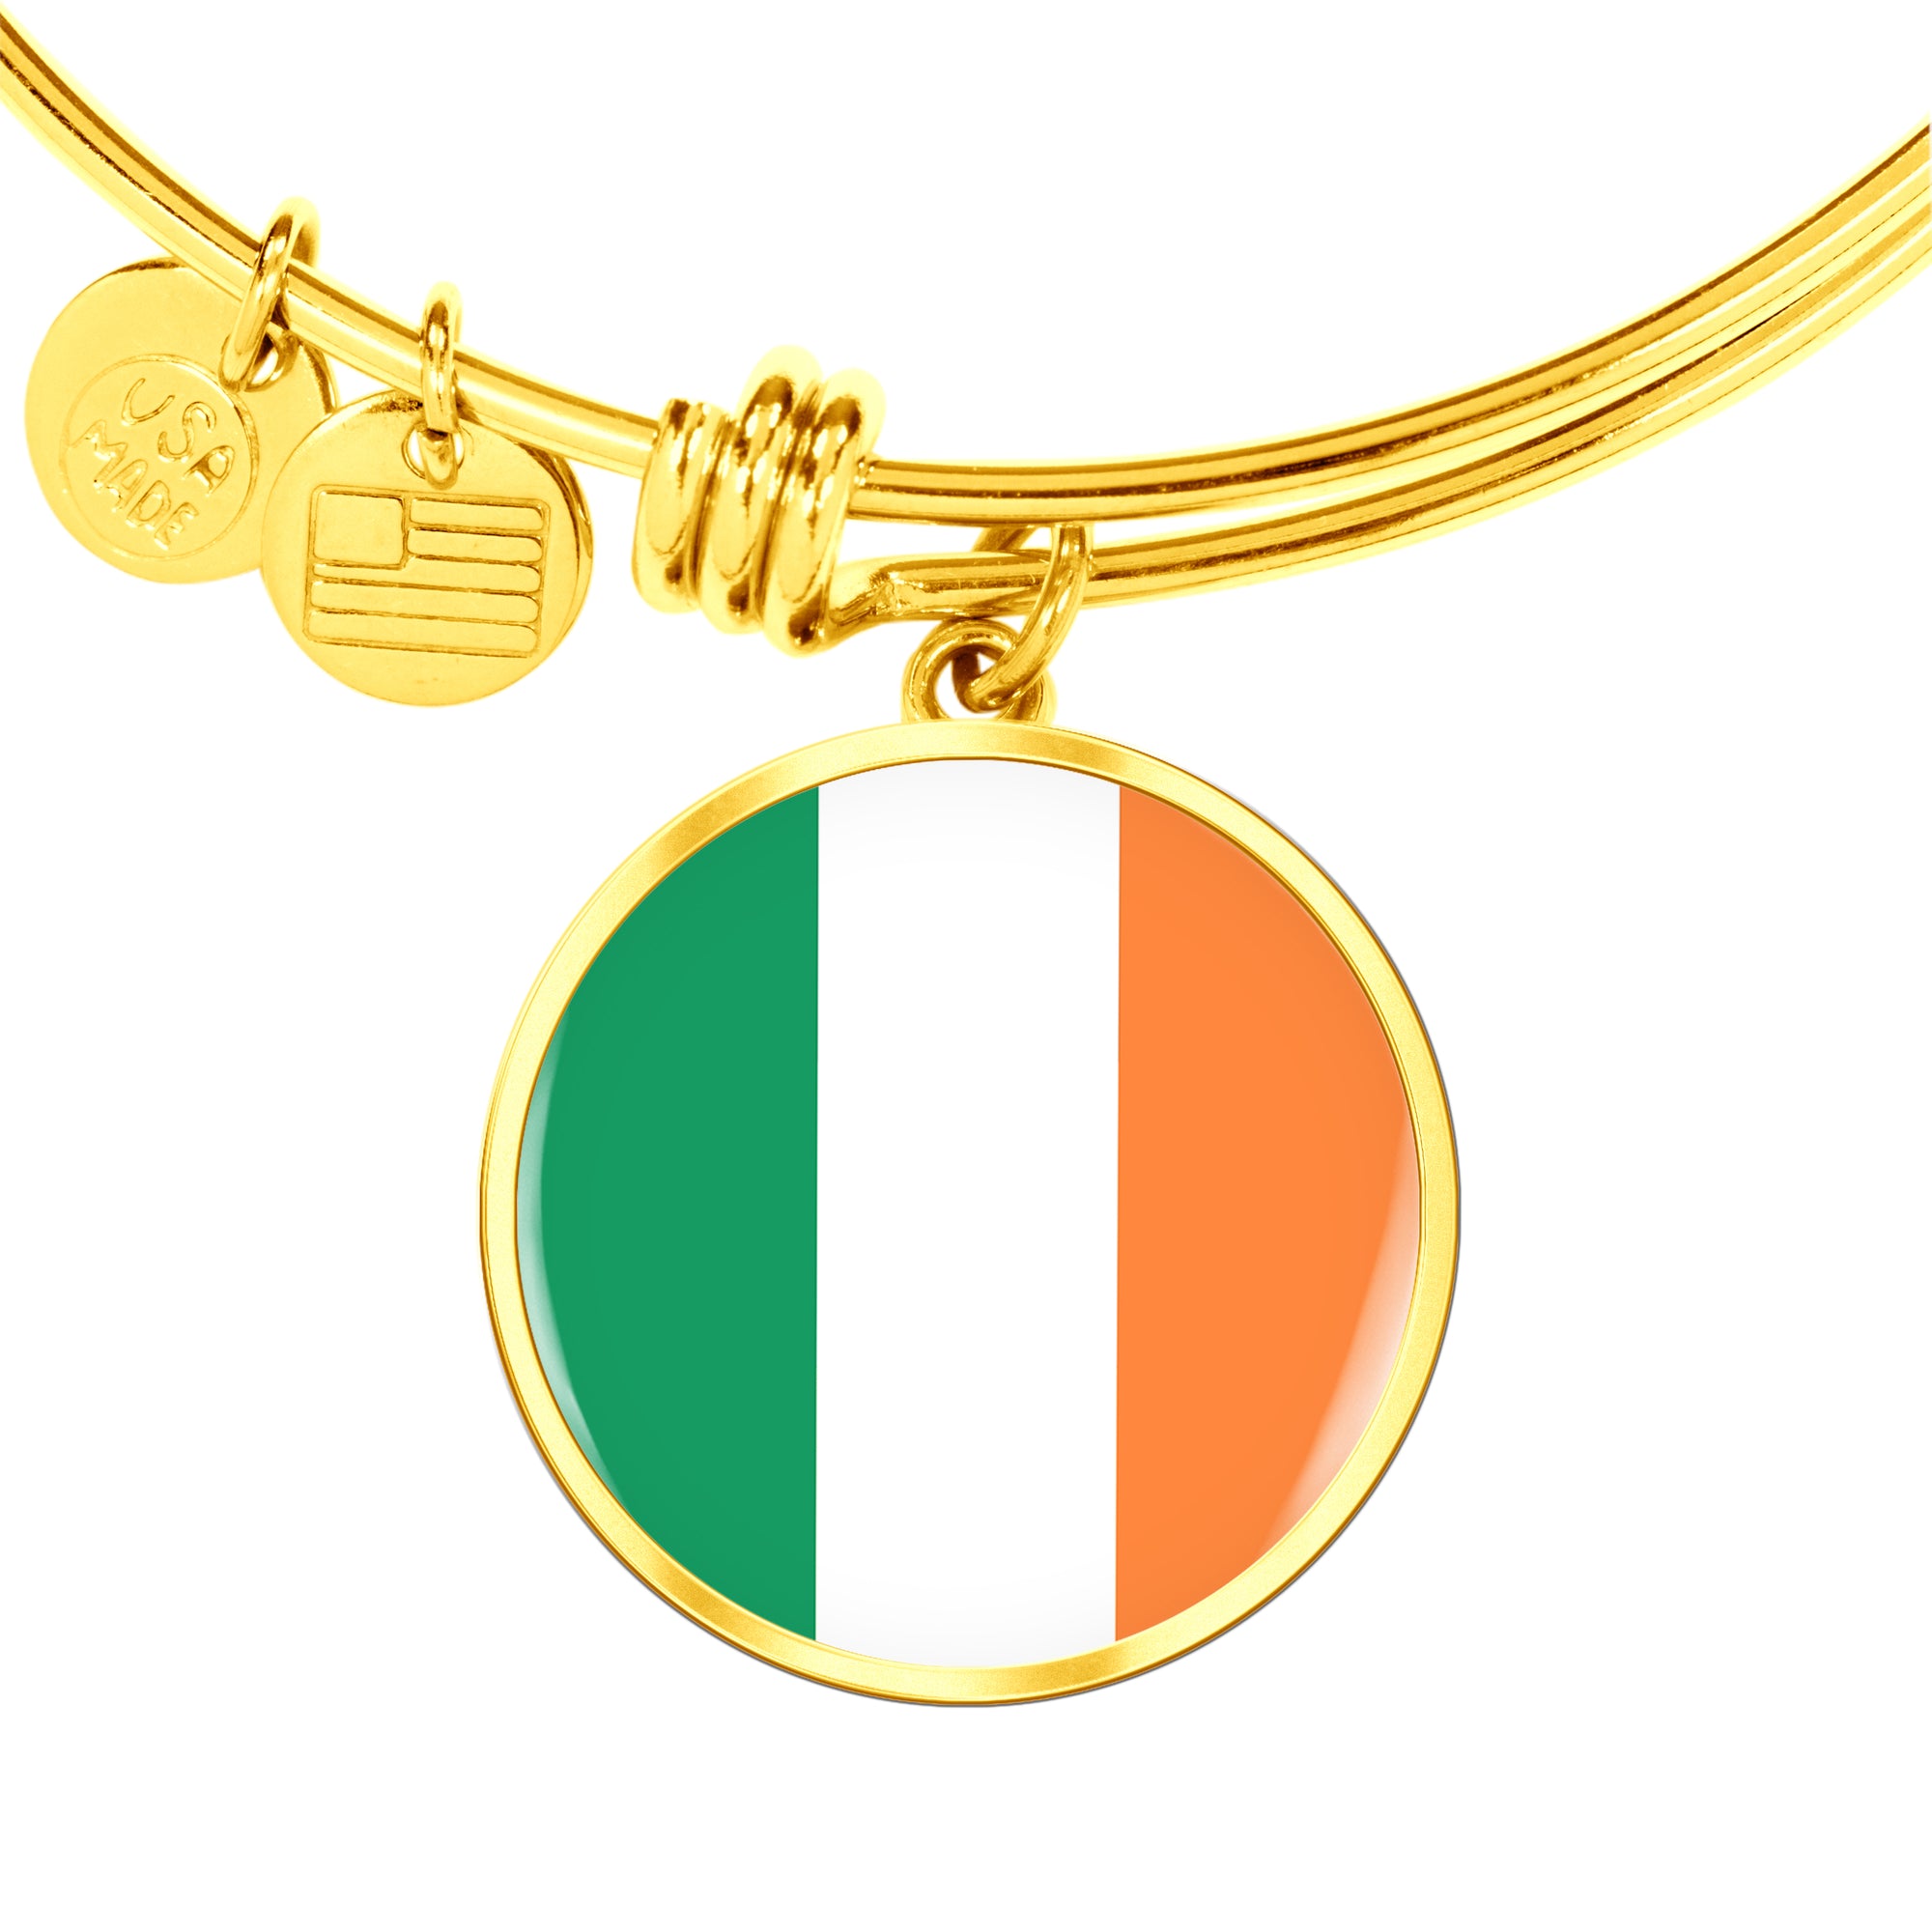 Irish Flag - 18k Gold Finished Bangle Bracelet